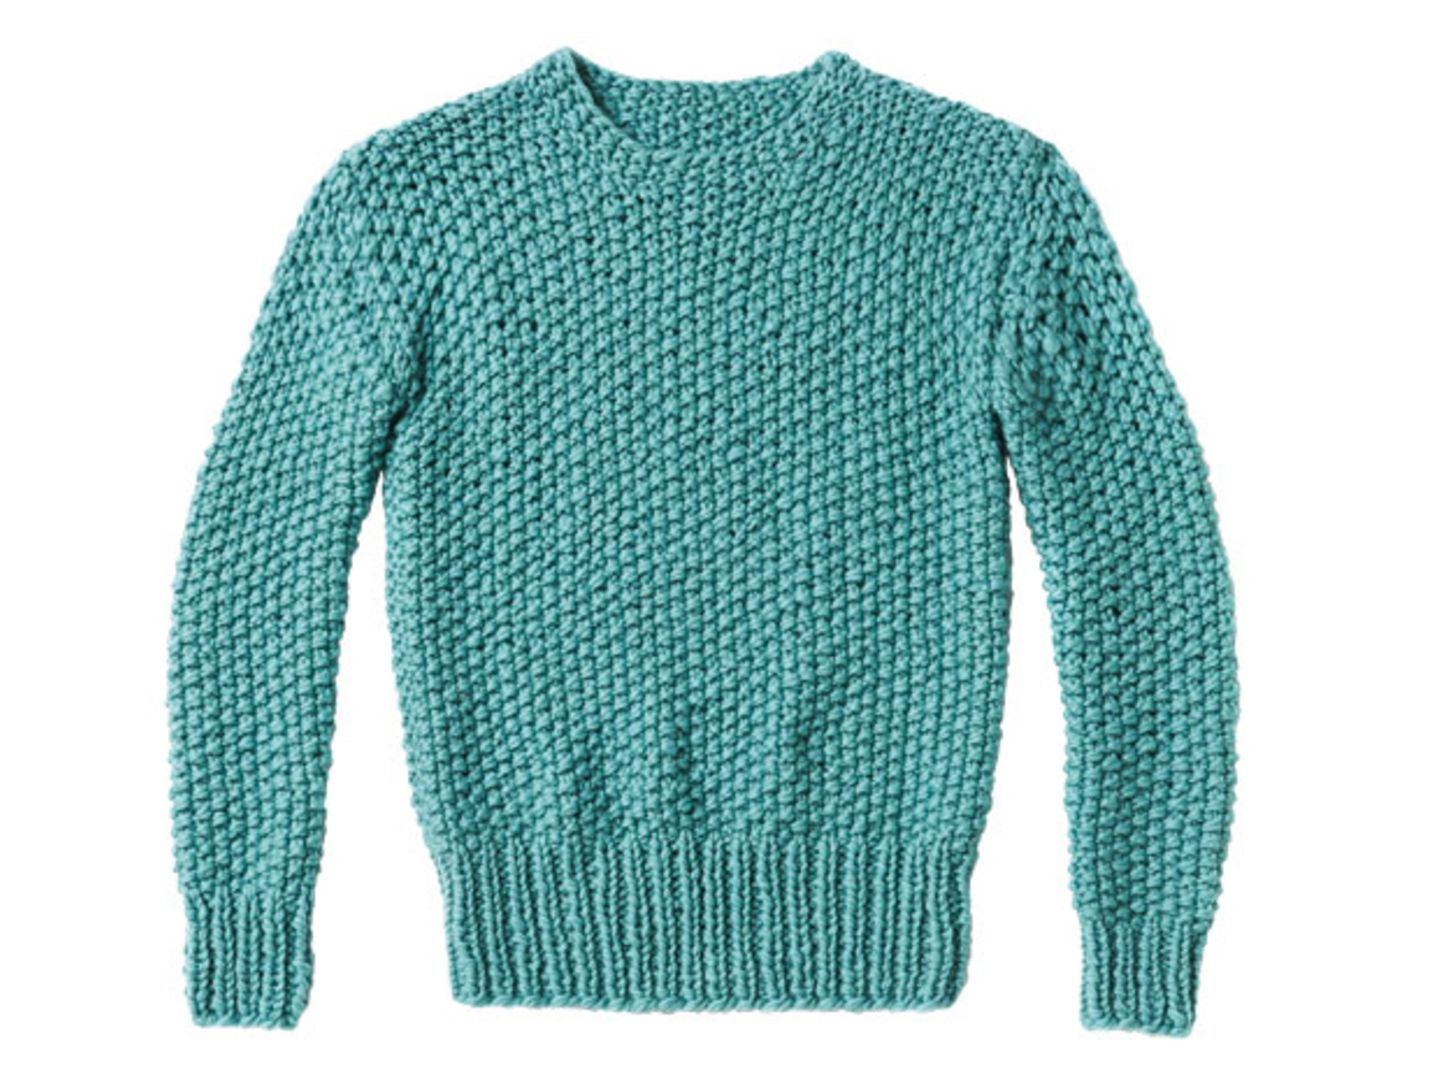 Perlmuster-Pullover stricken - eine Anleitung